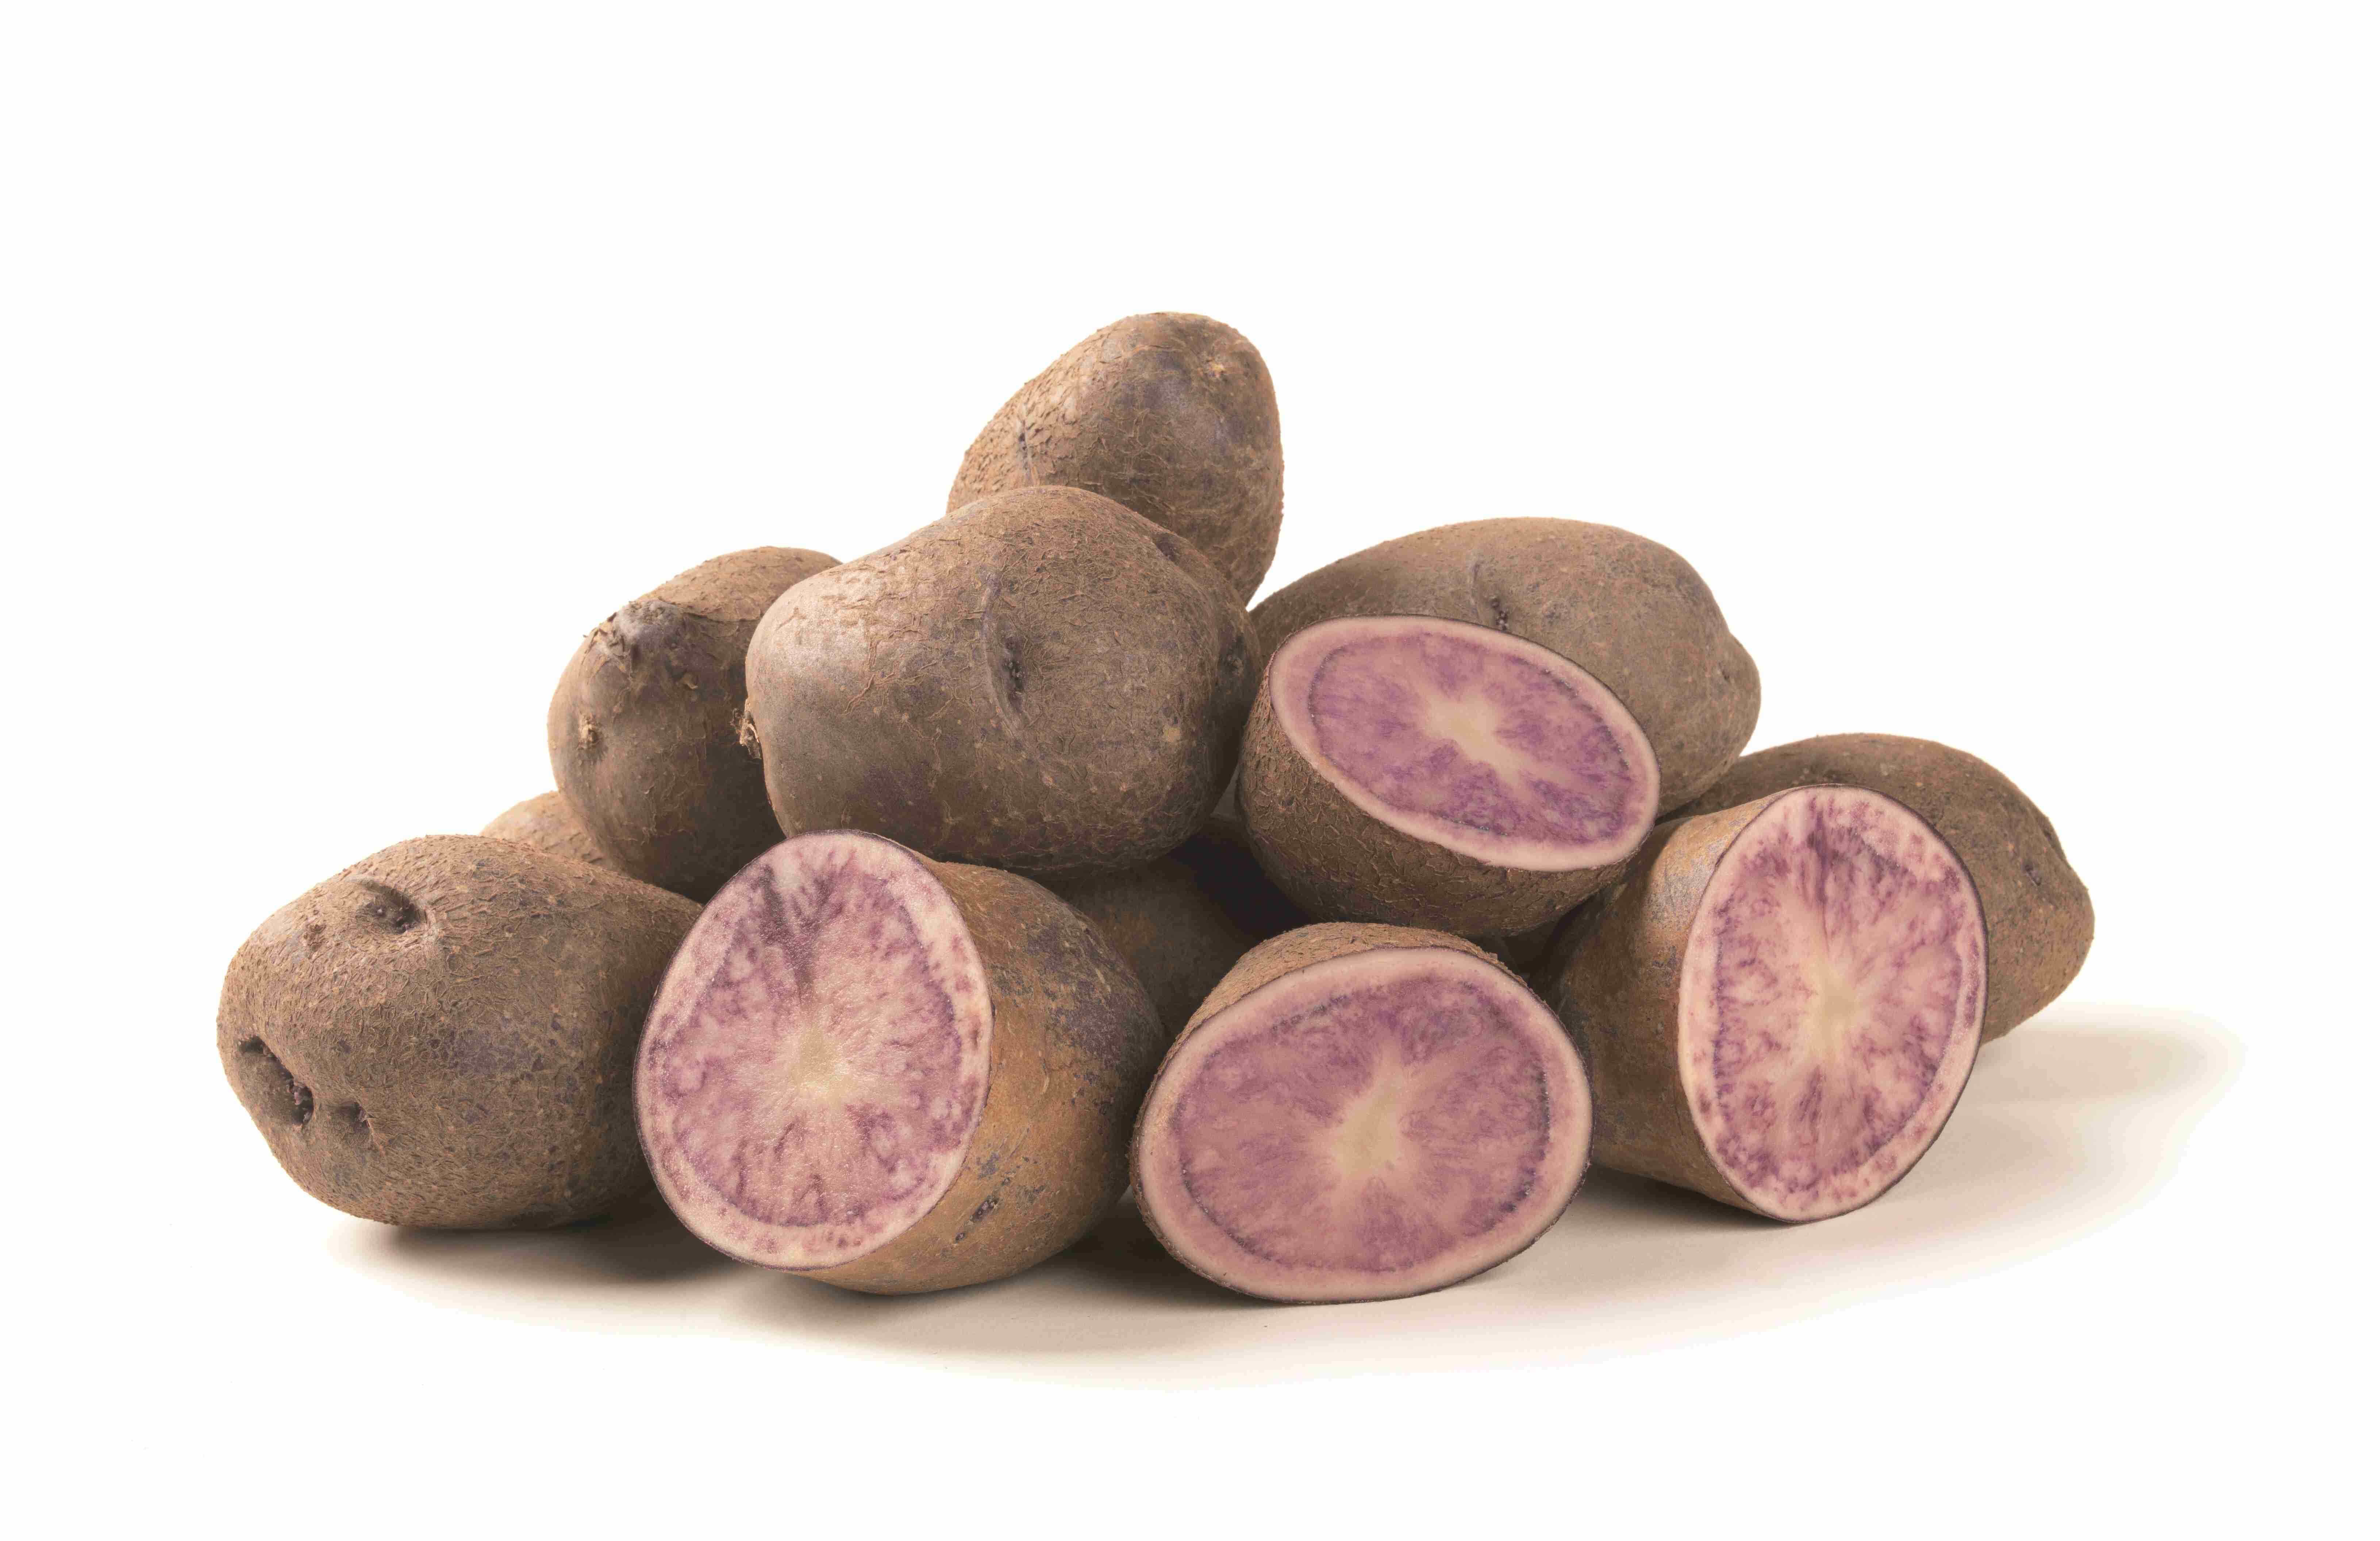 Le patate viola: contro ritenzione e adipe